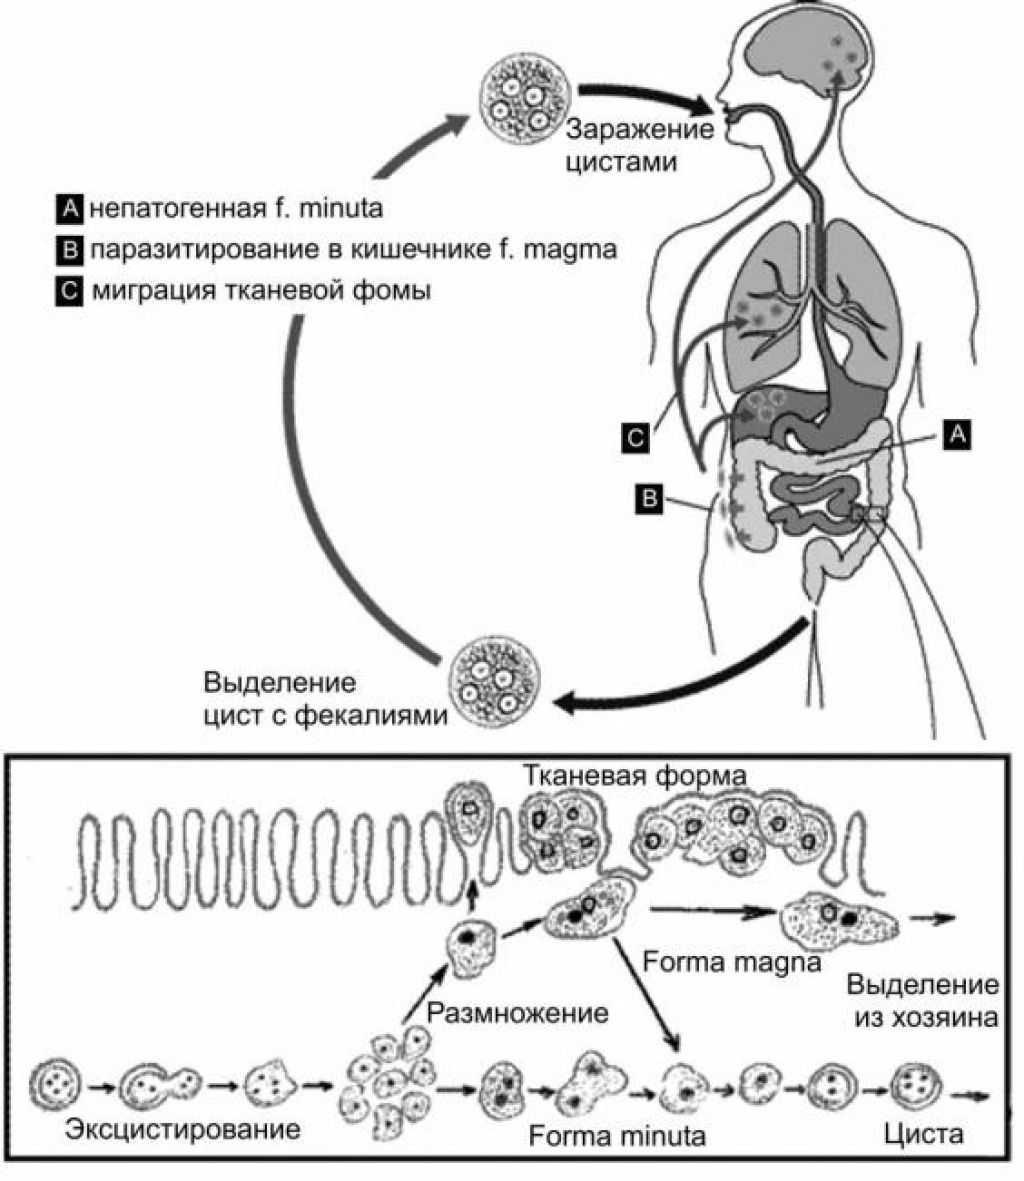 Жизненный цикл дизентерийной амебы схема. Амебная дизентерия жизненный цикл. Схема жизненного цикла развития дизентерийной амебы. Жизненный цикл дизентерийной амёбы. (Entamoeba histolytica).. Жизненные формы амебы